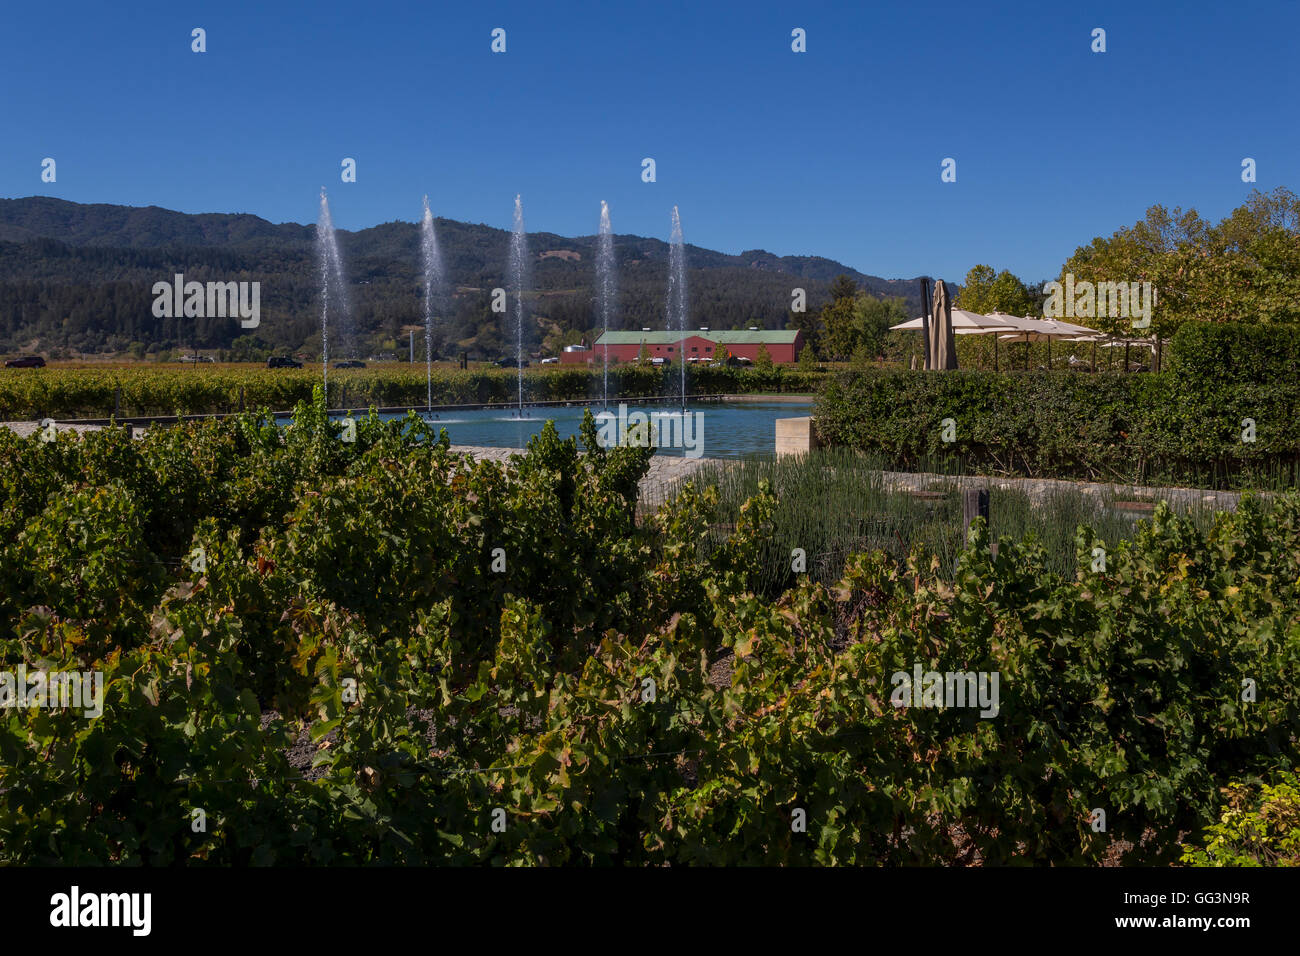 Vigne, raisin vignoble, dégustation en plein air terrasse. Piscine dégustation de vin, fontaines, Alpha Omega Winery, Napa Valley, Californie Banque D'Images